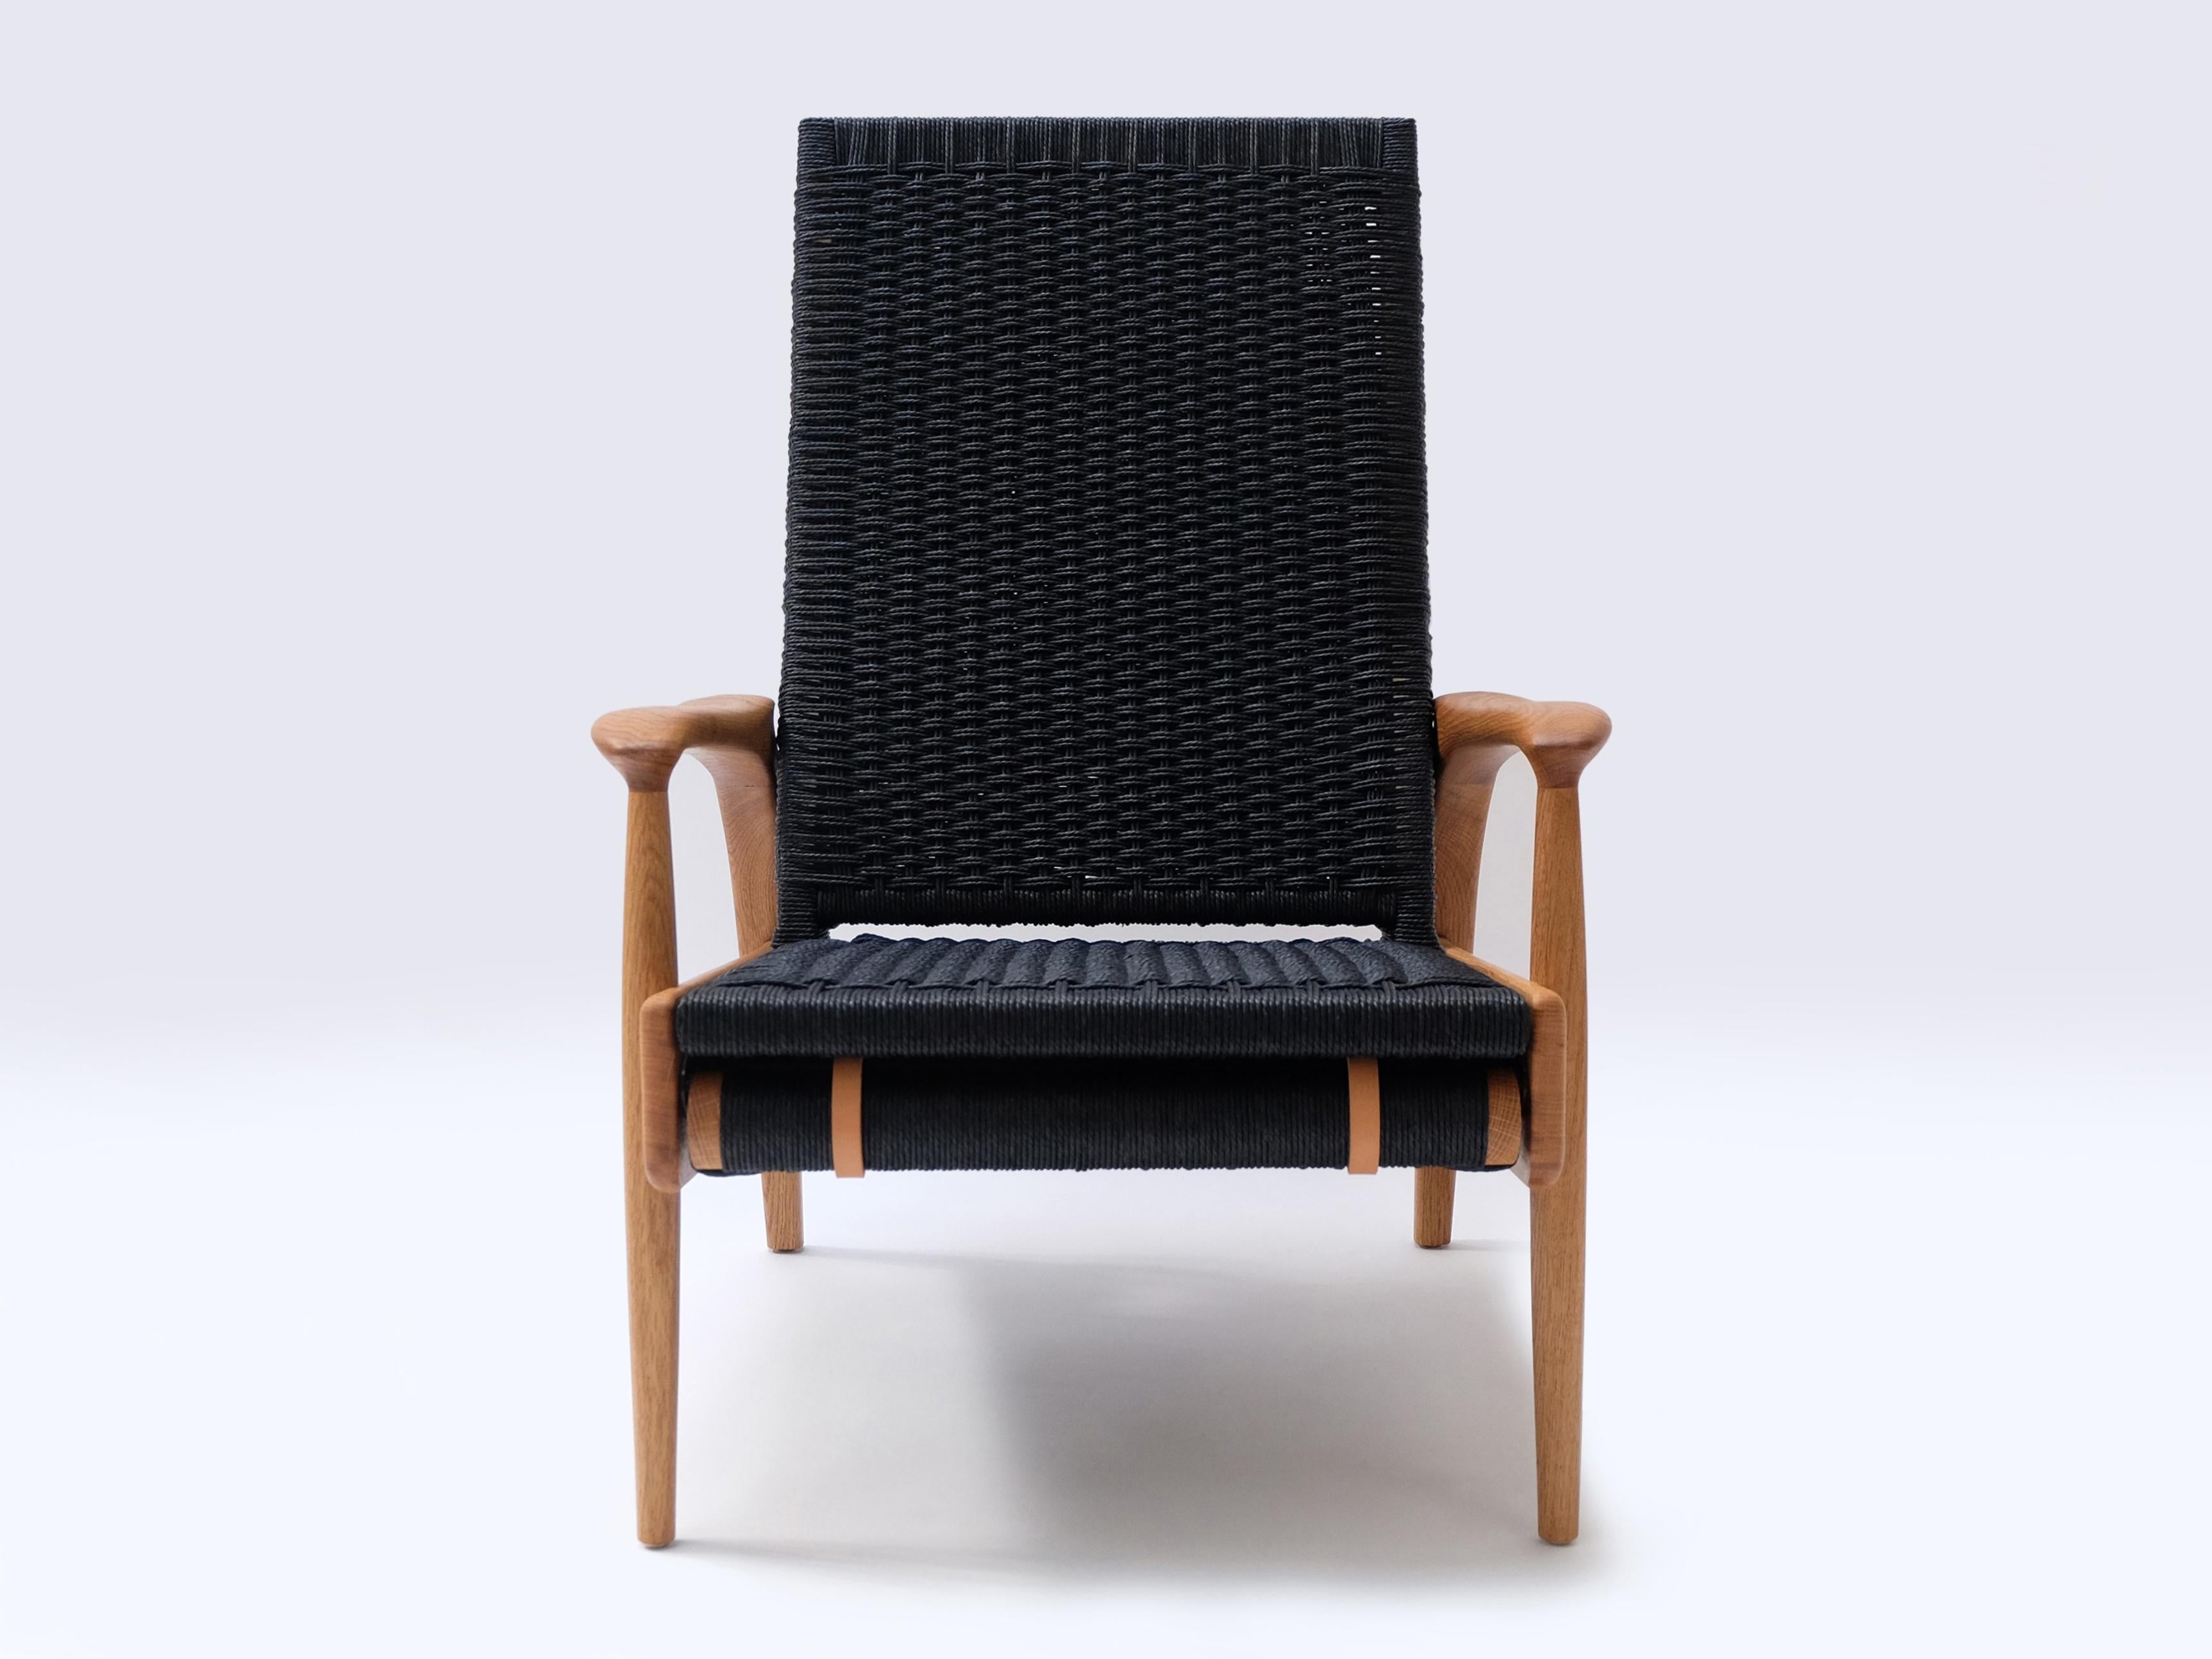 Ein Paar handgefertigte Eco-Lounge-Sessel FENDRIK von Studio180degree
Abgebildet in nachhaltiger, massiver, natürlich geölter Eiche und kontrastierendem Original Danish Cord in Schwarz

Edel - taktil - raffiniert - nachhaltig
Reclining Eco Lounge